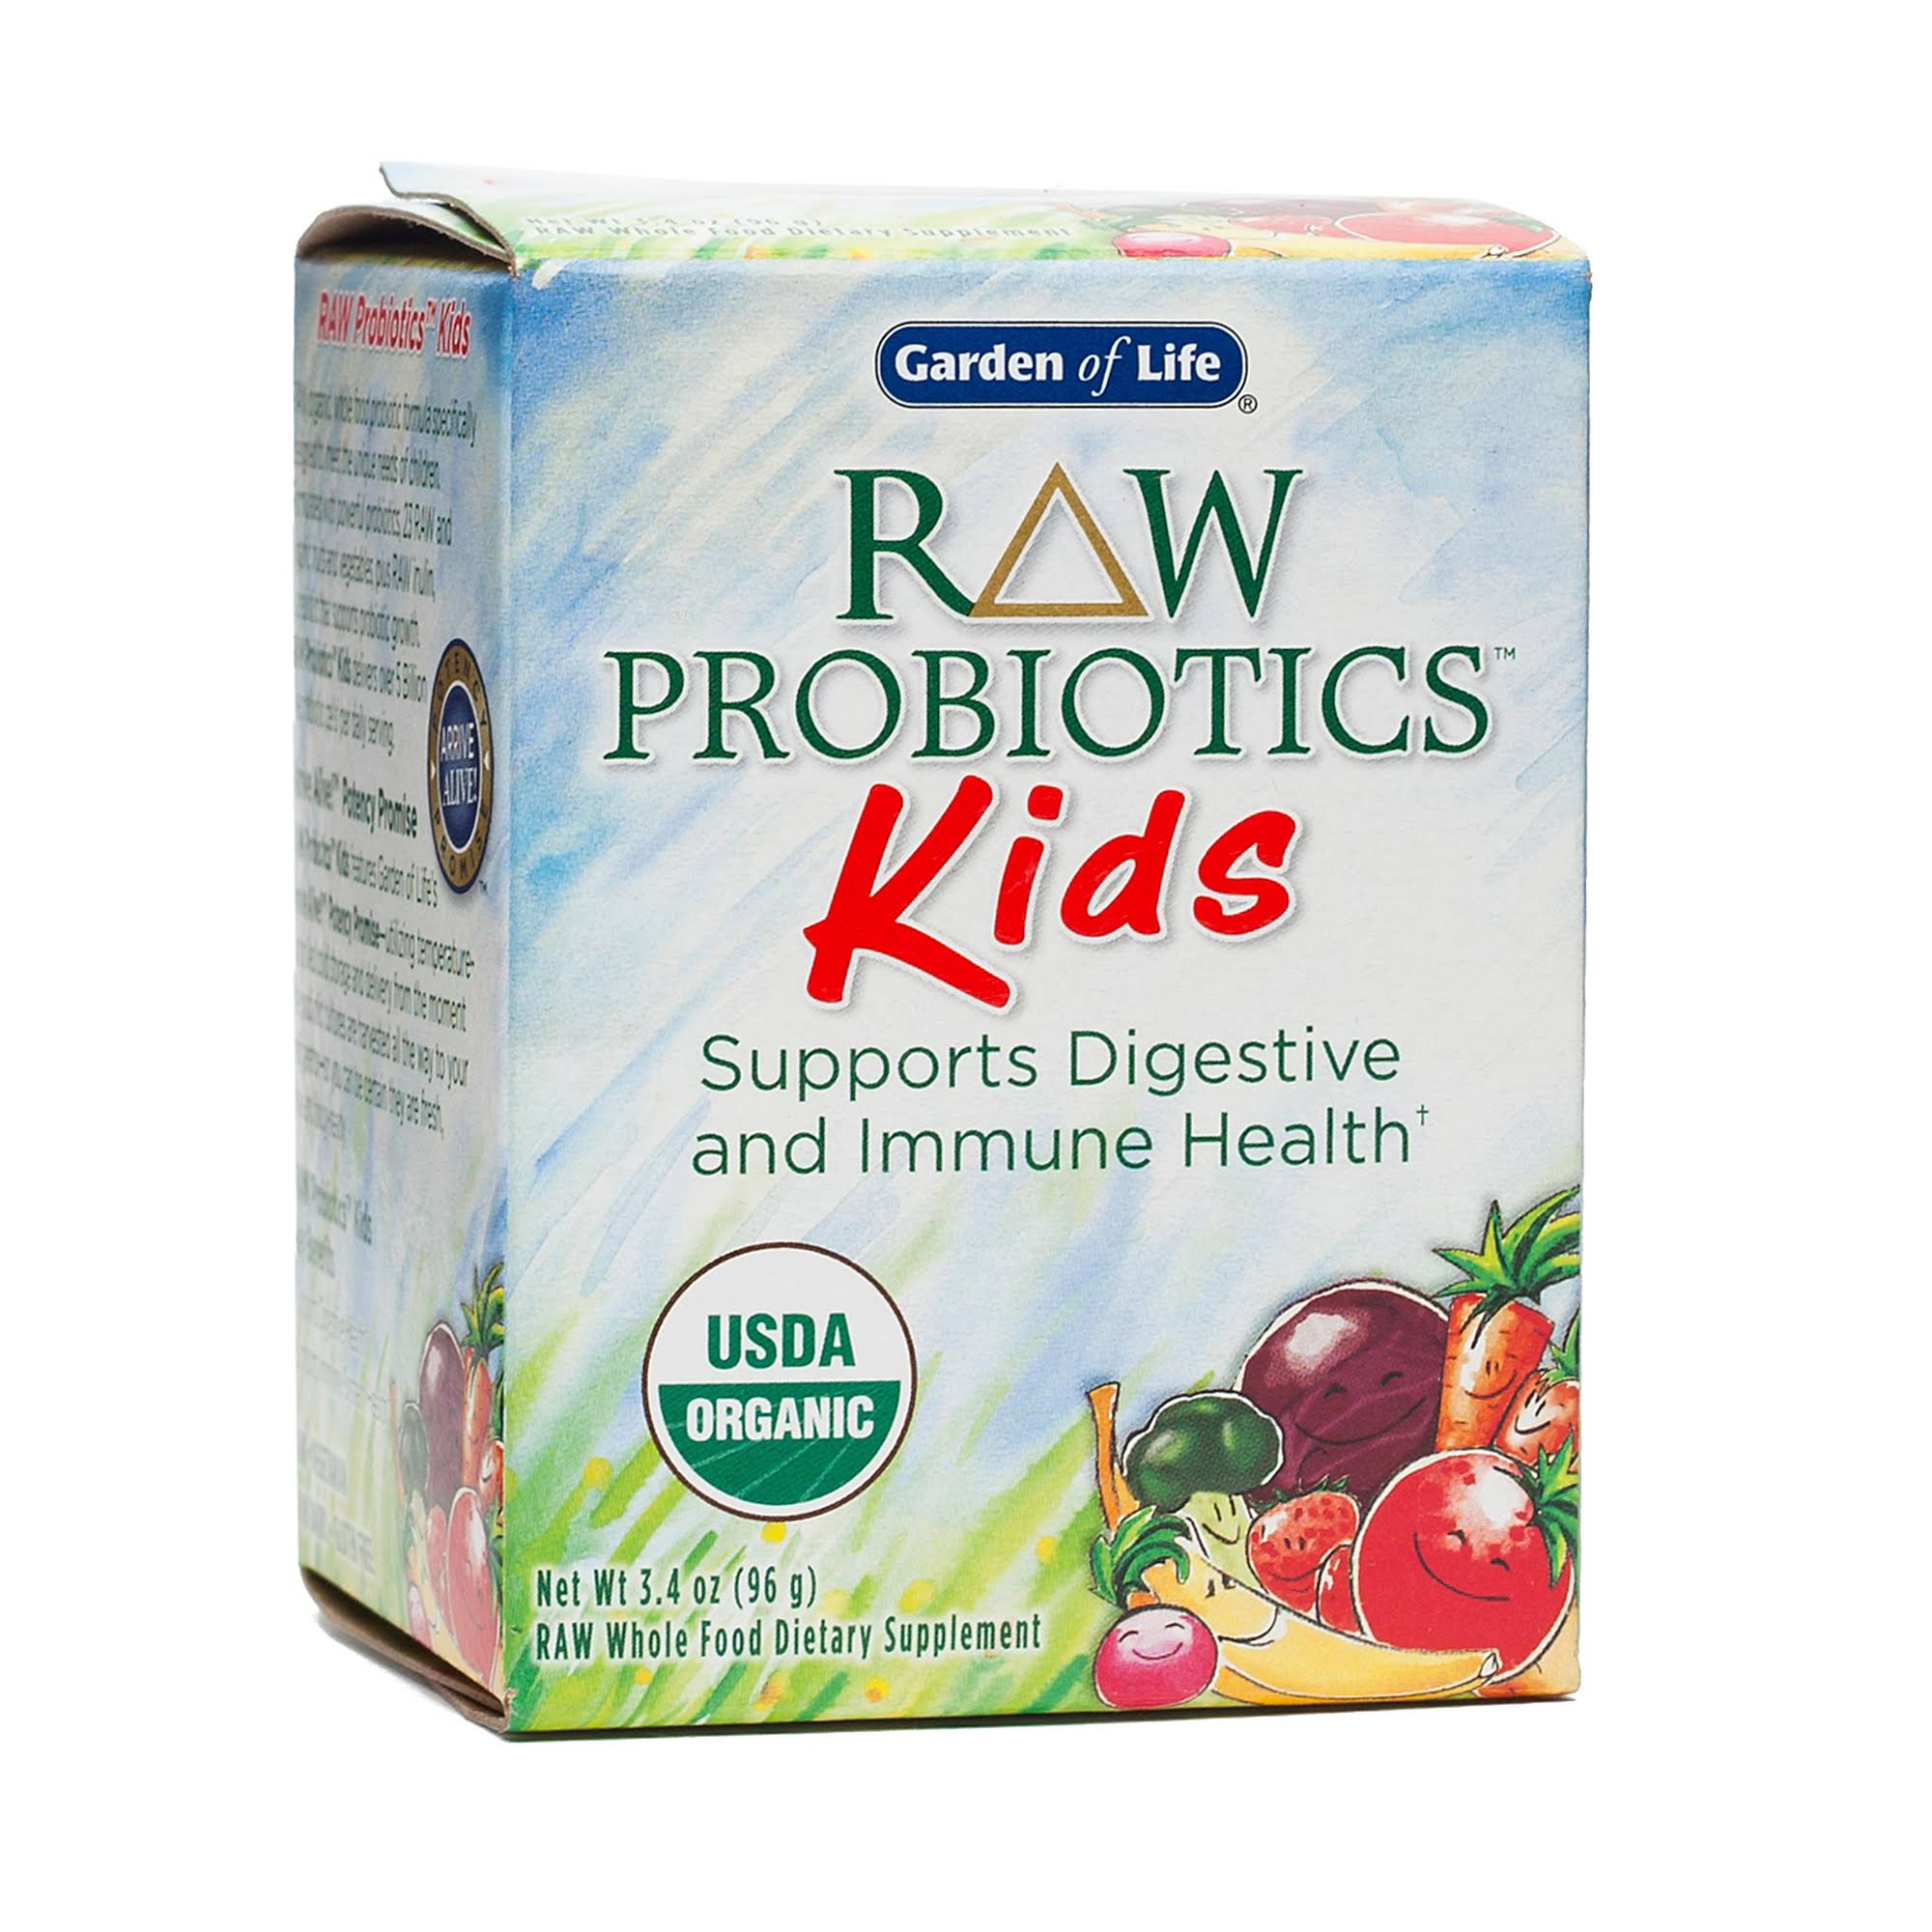 Garden of Life Raw Probiotic Kids Dietary Supplement - 96g